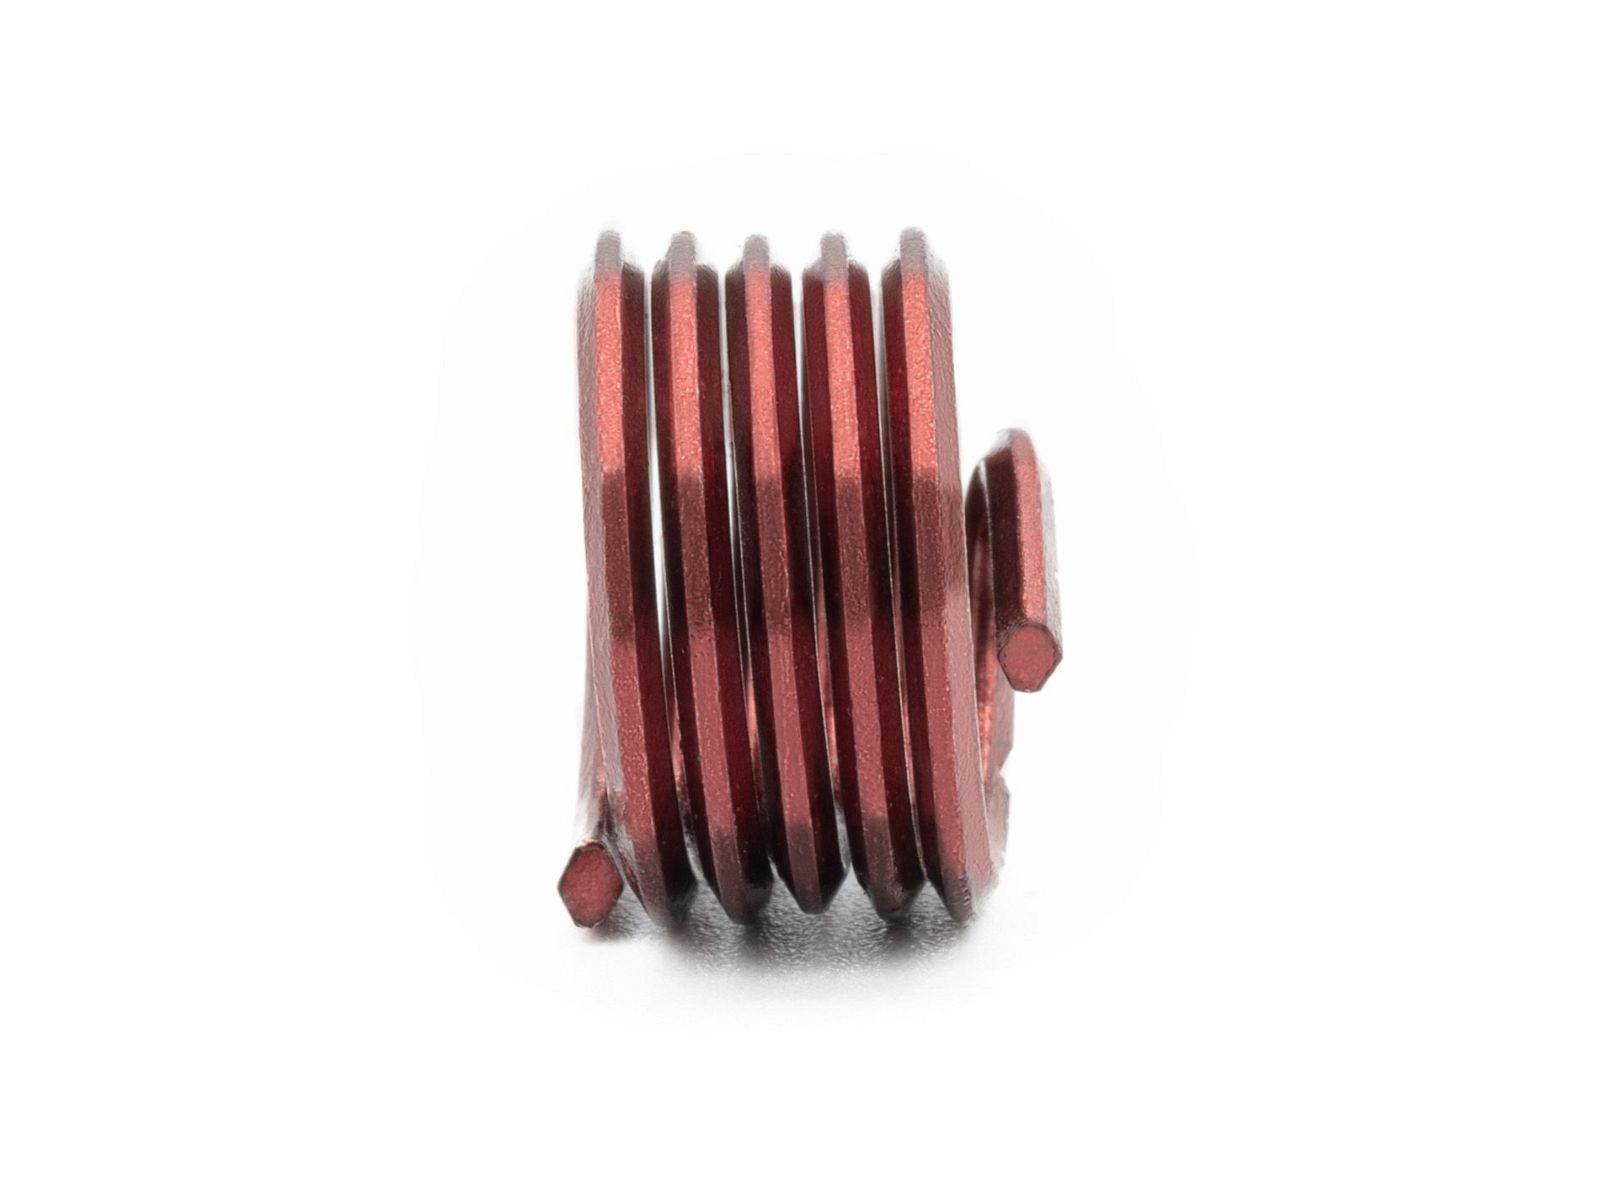 BaerCoil Wire Thread Inserts UNC 1“ x 8 - 1.0 D (25.4 mm) - screw grip (screw locking) - 10 pcs.